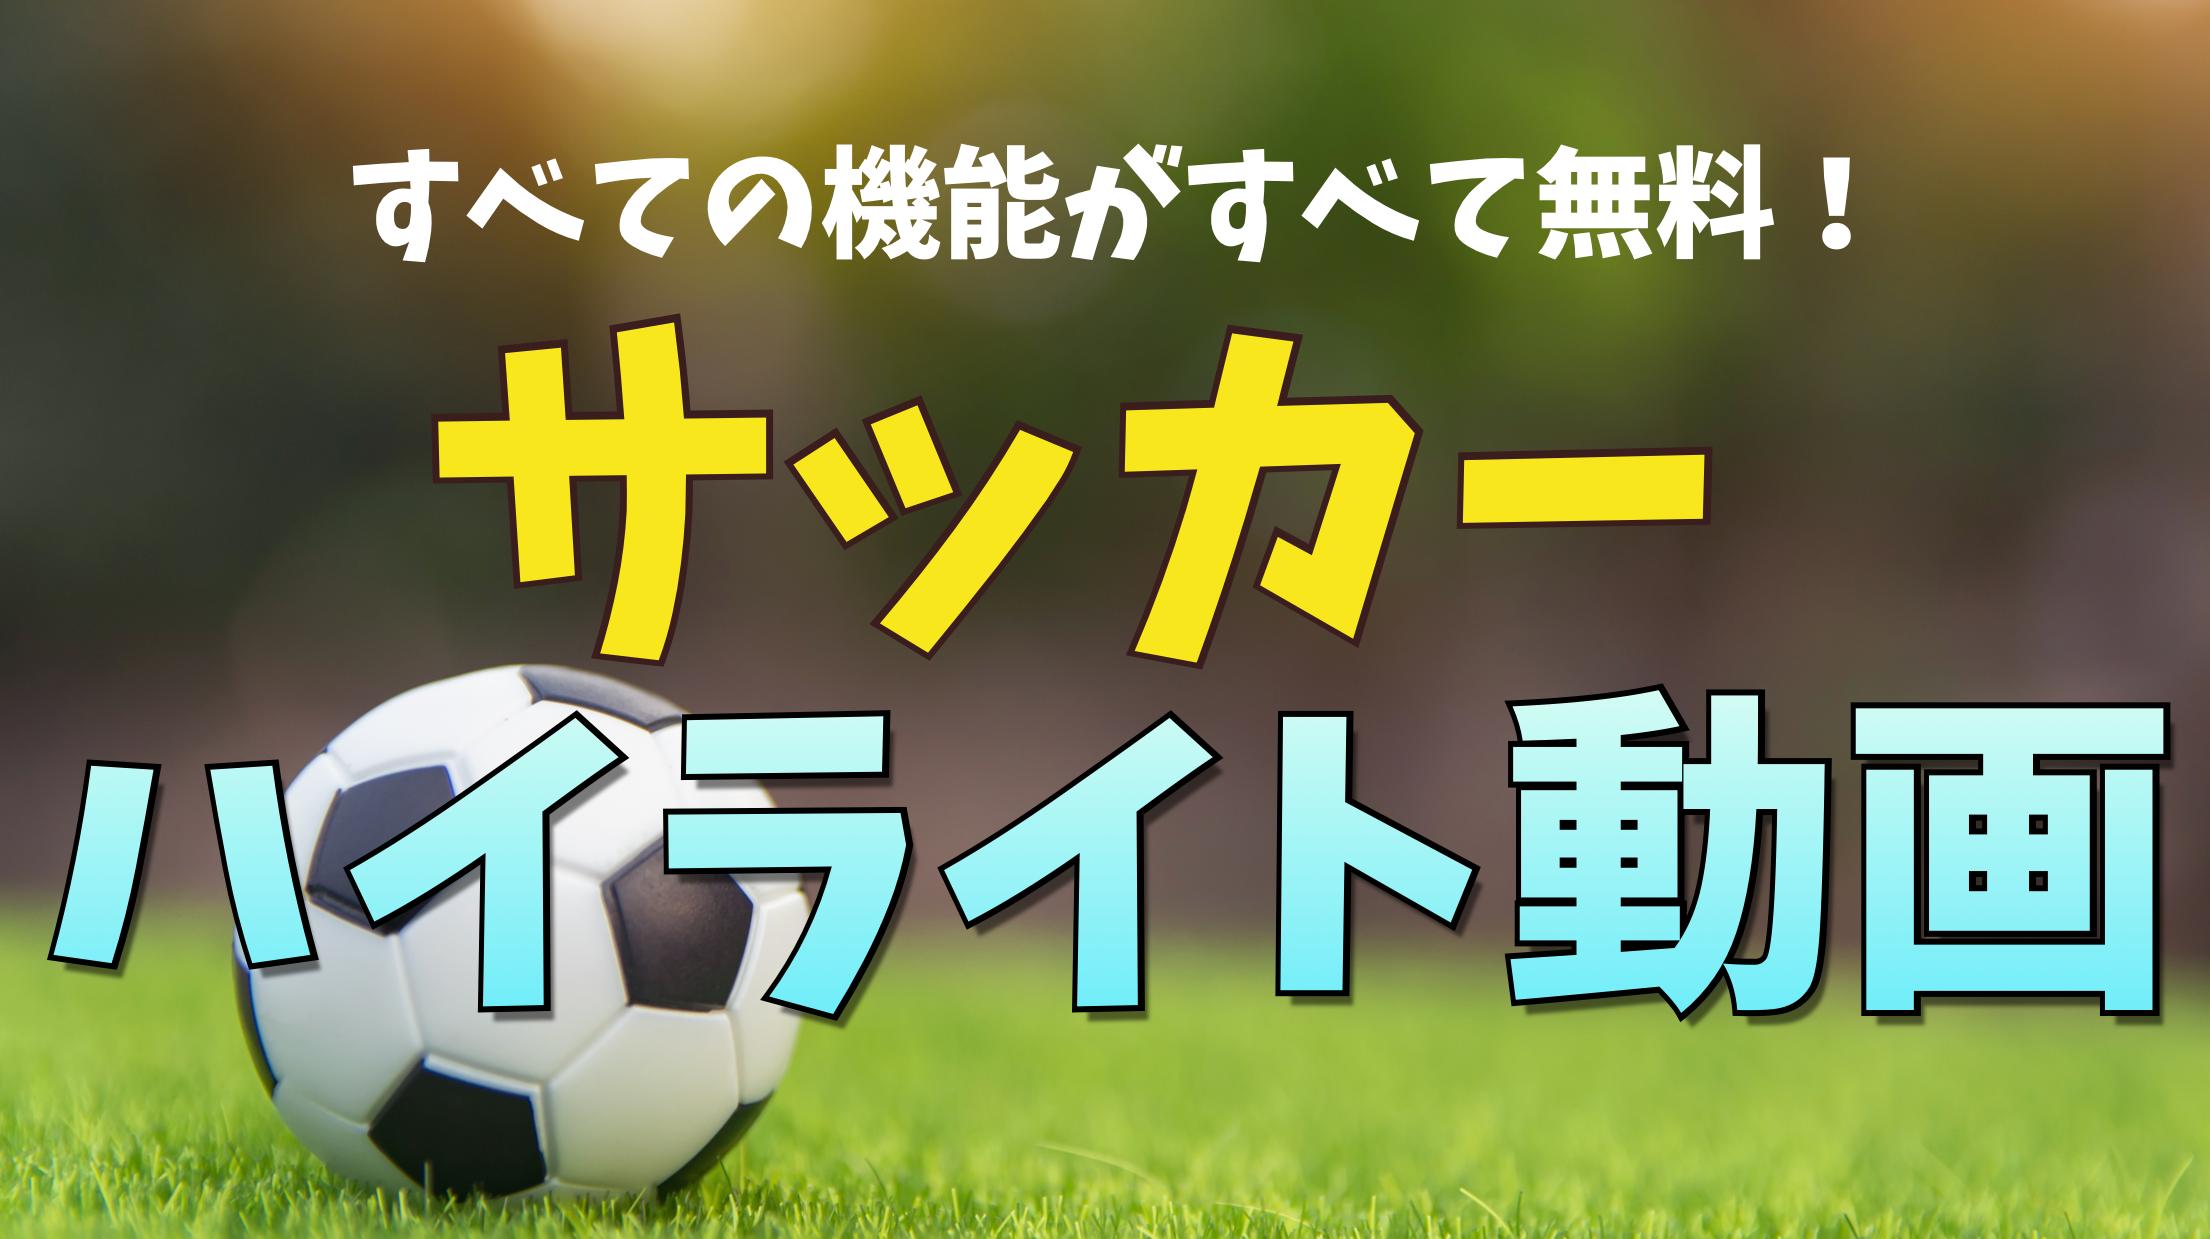 プロサッカーのハイライト サッカーの試合動画 For Android Apk Download